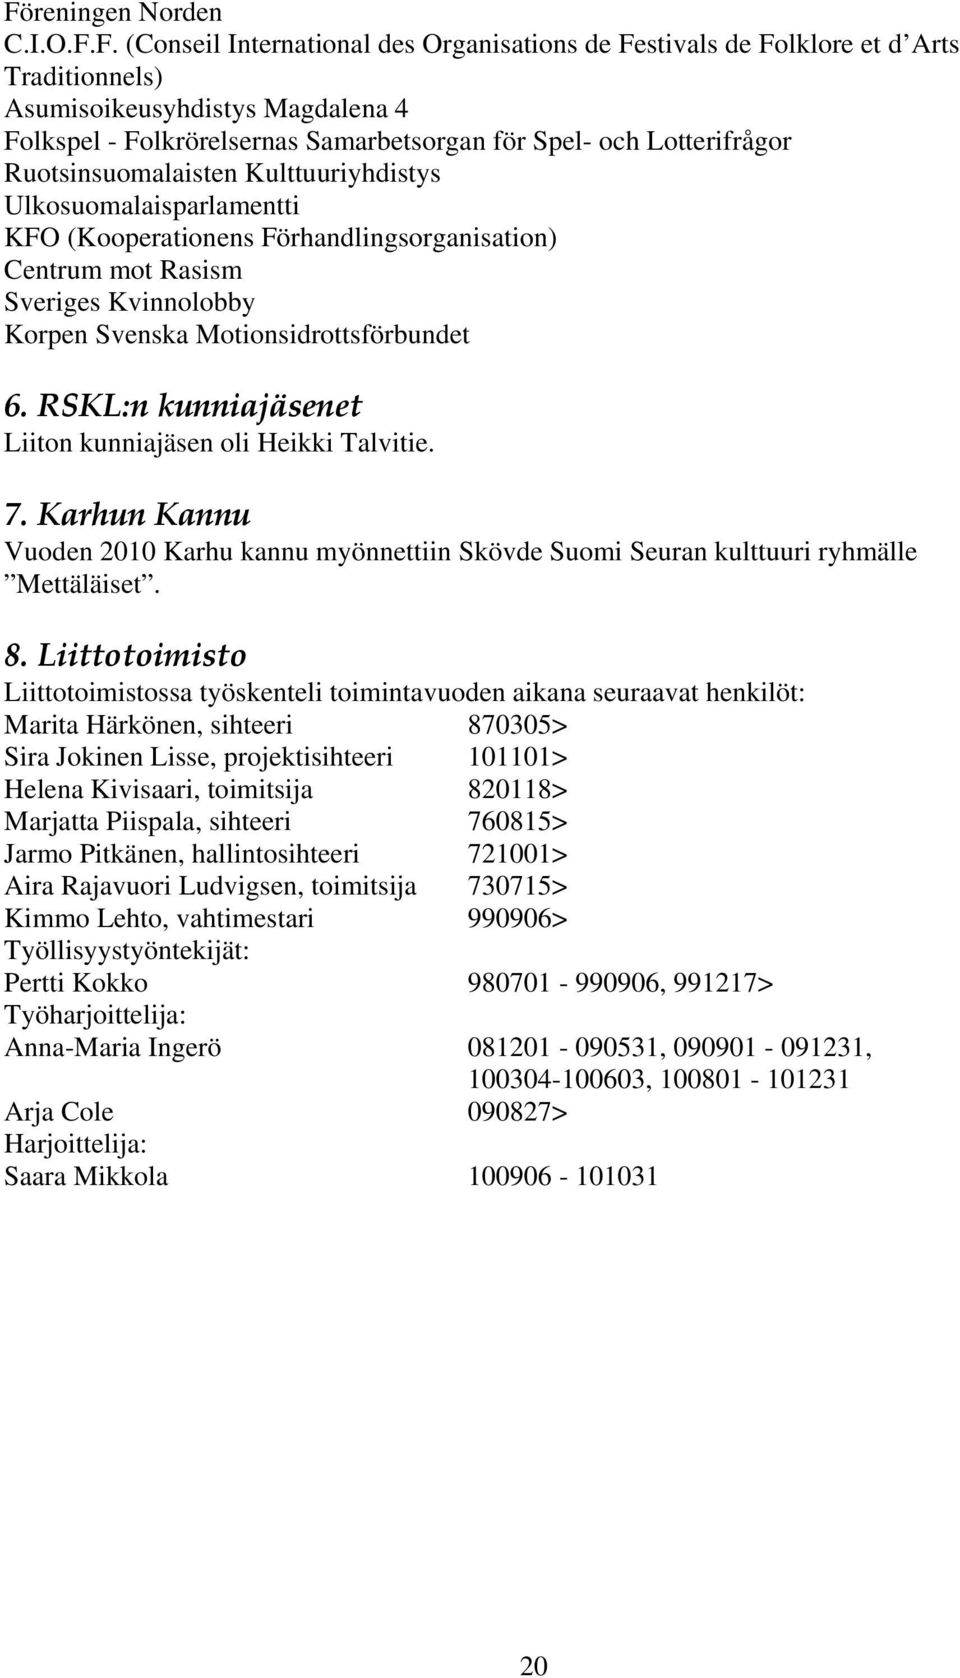 Motionsidrottsförbundet 6. RSKL:n kunniajäsenet Liiton kunniajäsen oli Heikki Talvitie. 7. Karhun Kannu Vuoden 2010 Karhu kannu myönnettiin Skövde Suomi Seuran kulttuuri ryhmälle Mettäläiset. 8.